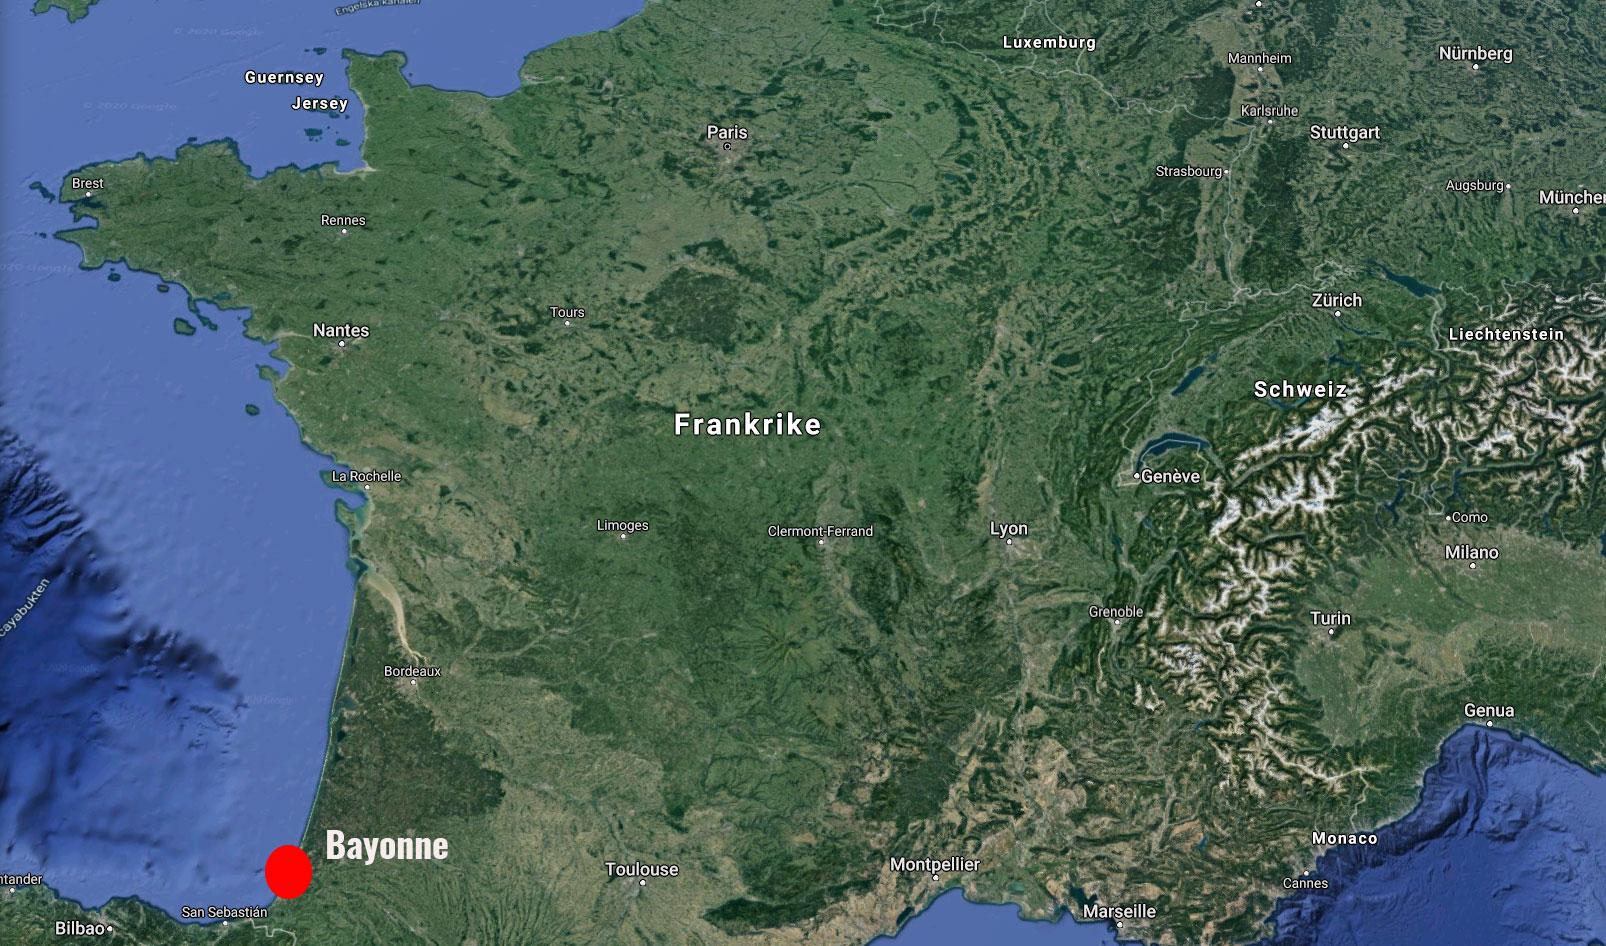 Staden Bayonne ligger i sydvästra Frankrike, nära gränsen till Spanien.